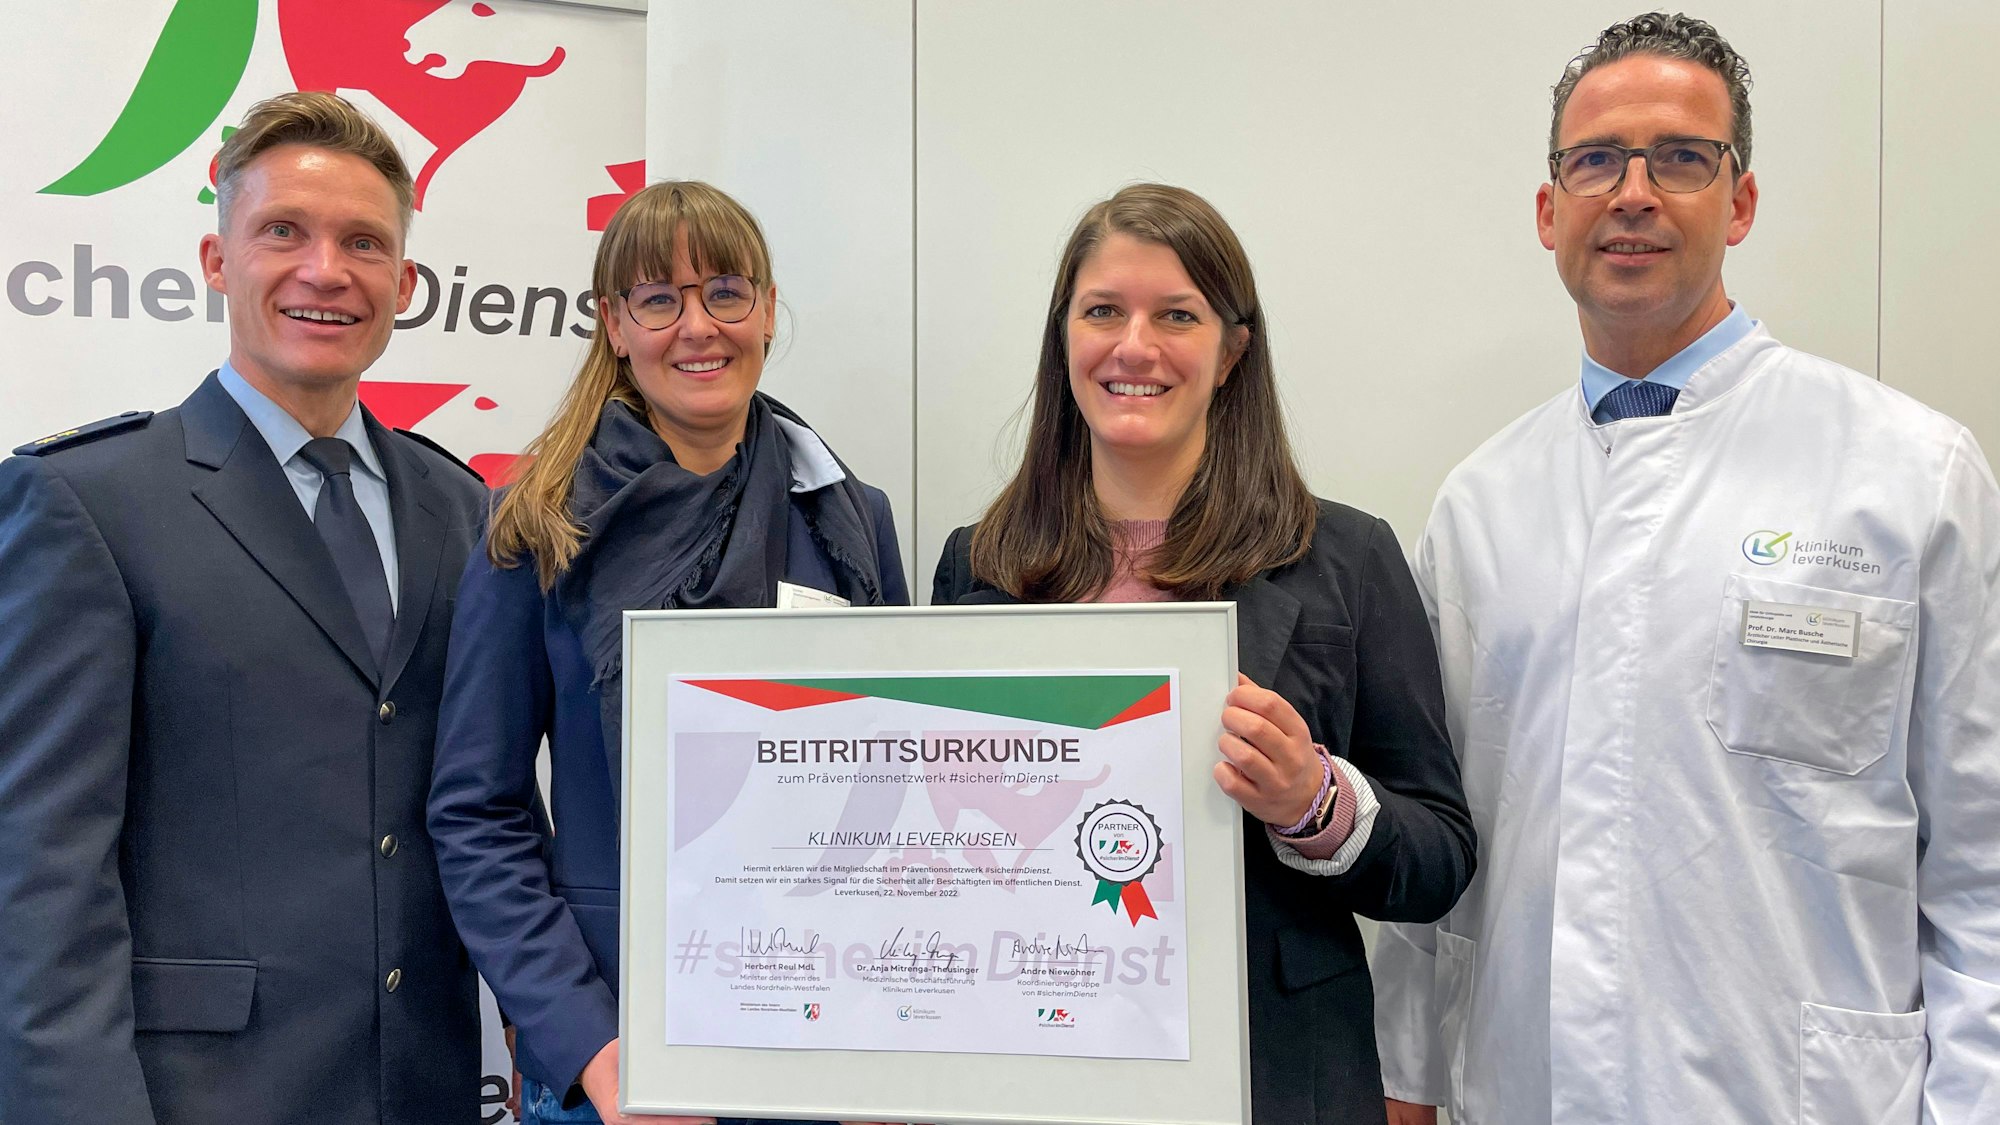 Die Netzwerk-Vertreter Andre Niewöhner und Anne Herr haben dem Klinikum Leverkusen, vertreten durch Jessica Odenthal und Prof. Dr. Marc N. Busche die Mitgliedsurkunde überreicht.